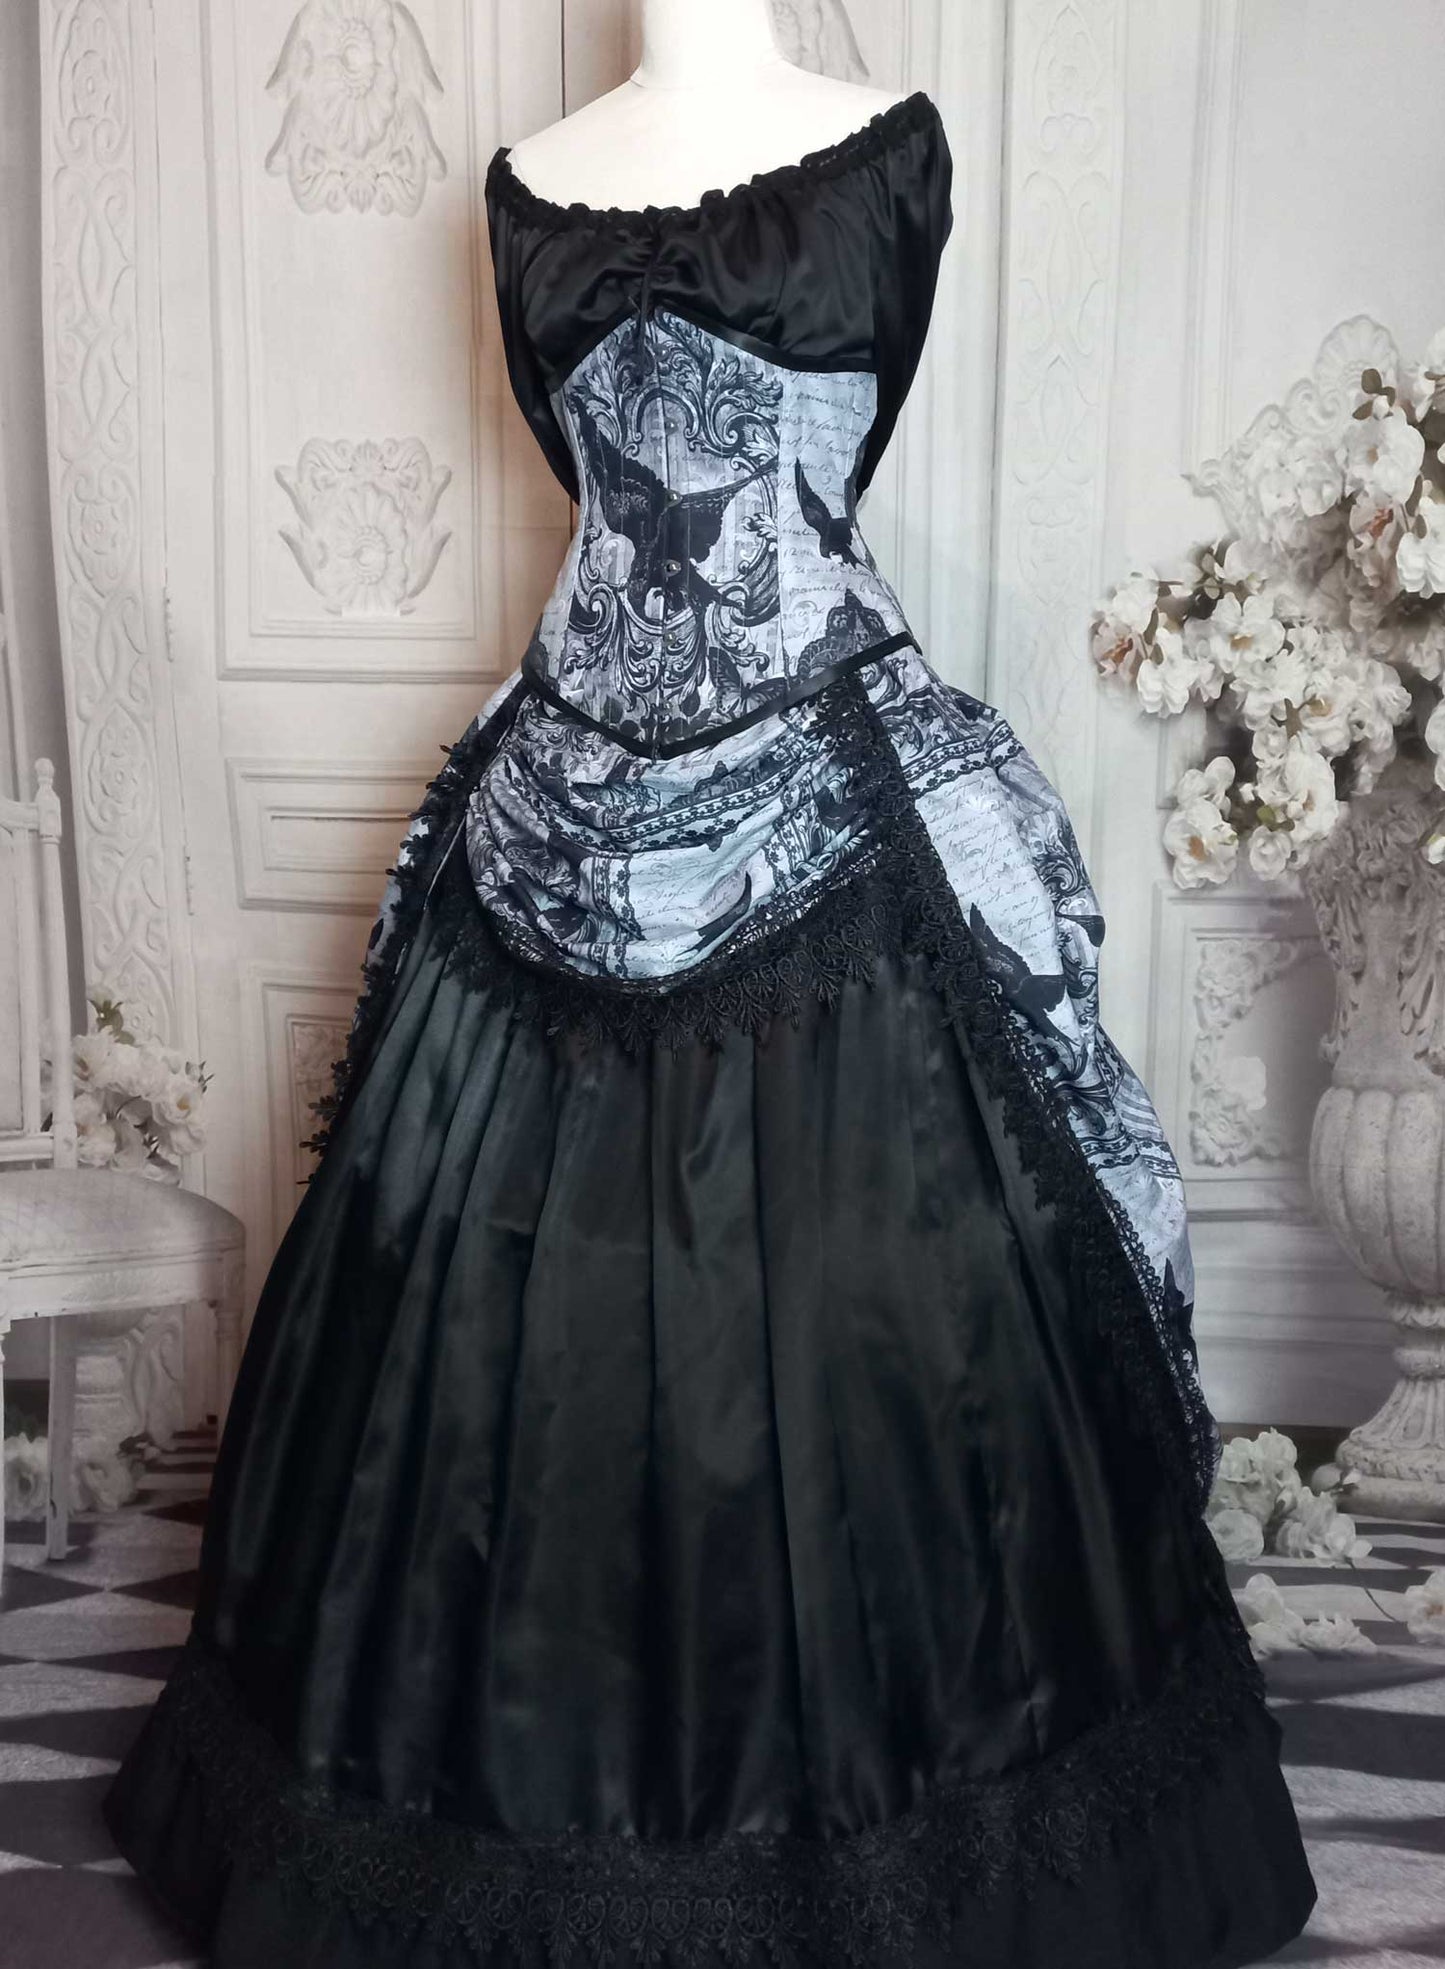 The Raven Bustle Skirt Set - Edgar Allan Poe Costume